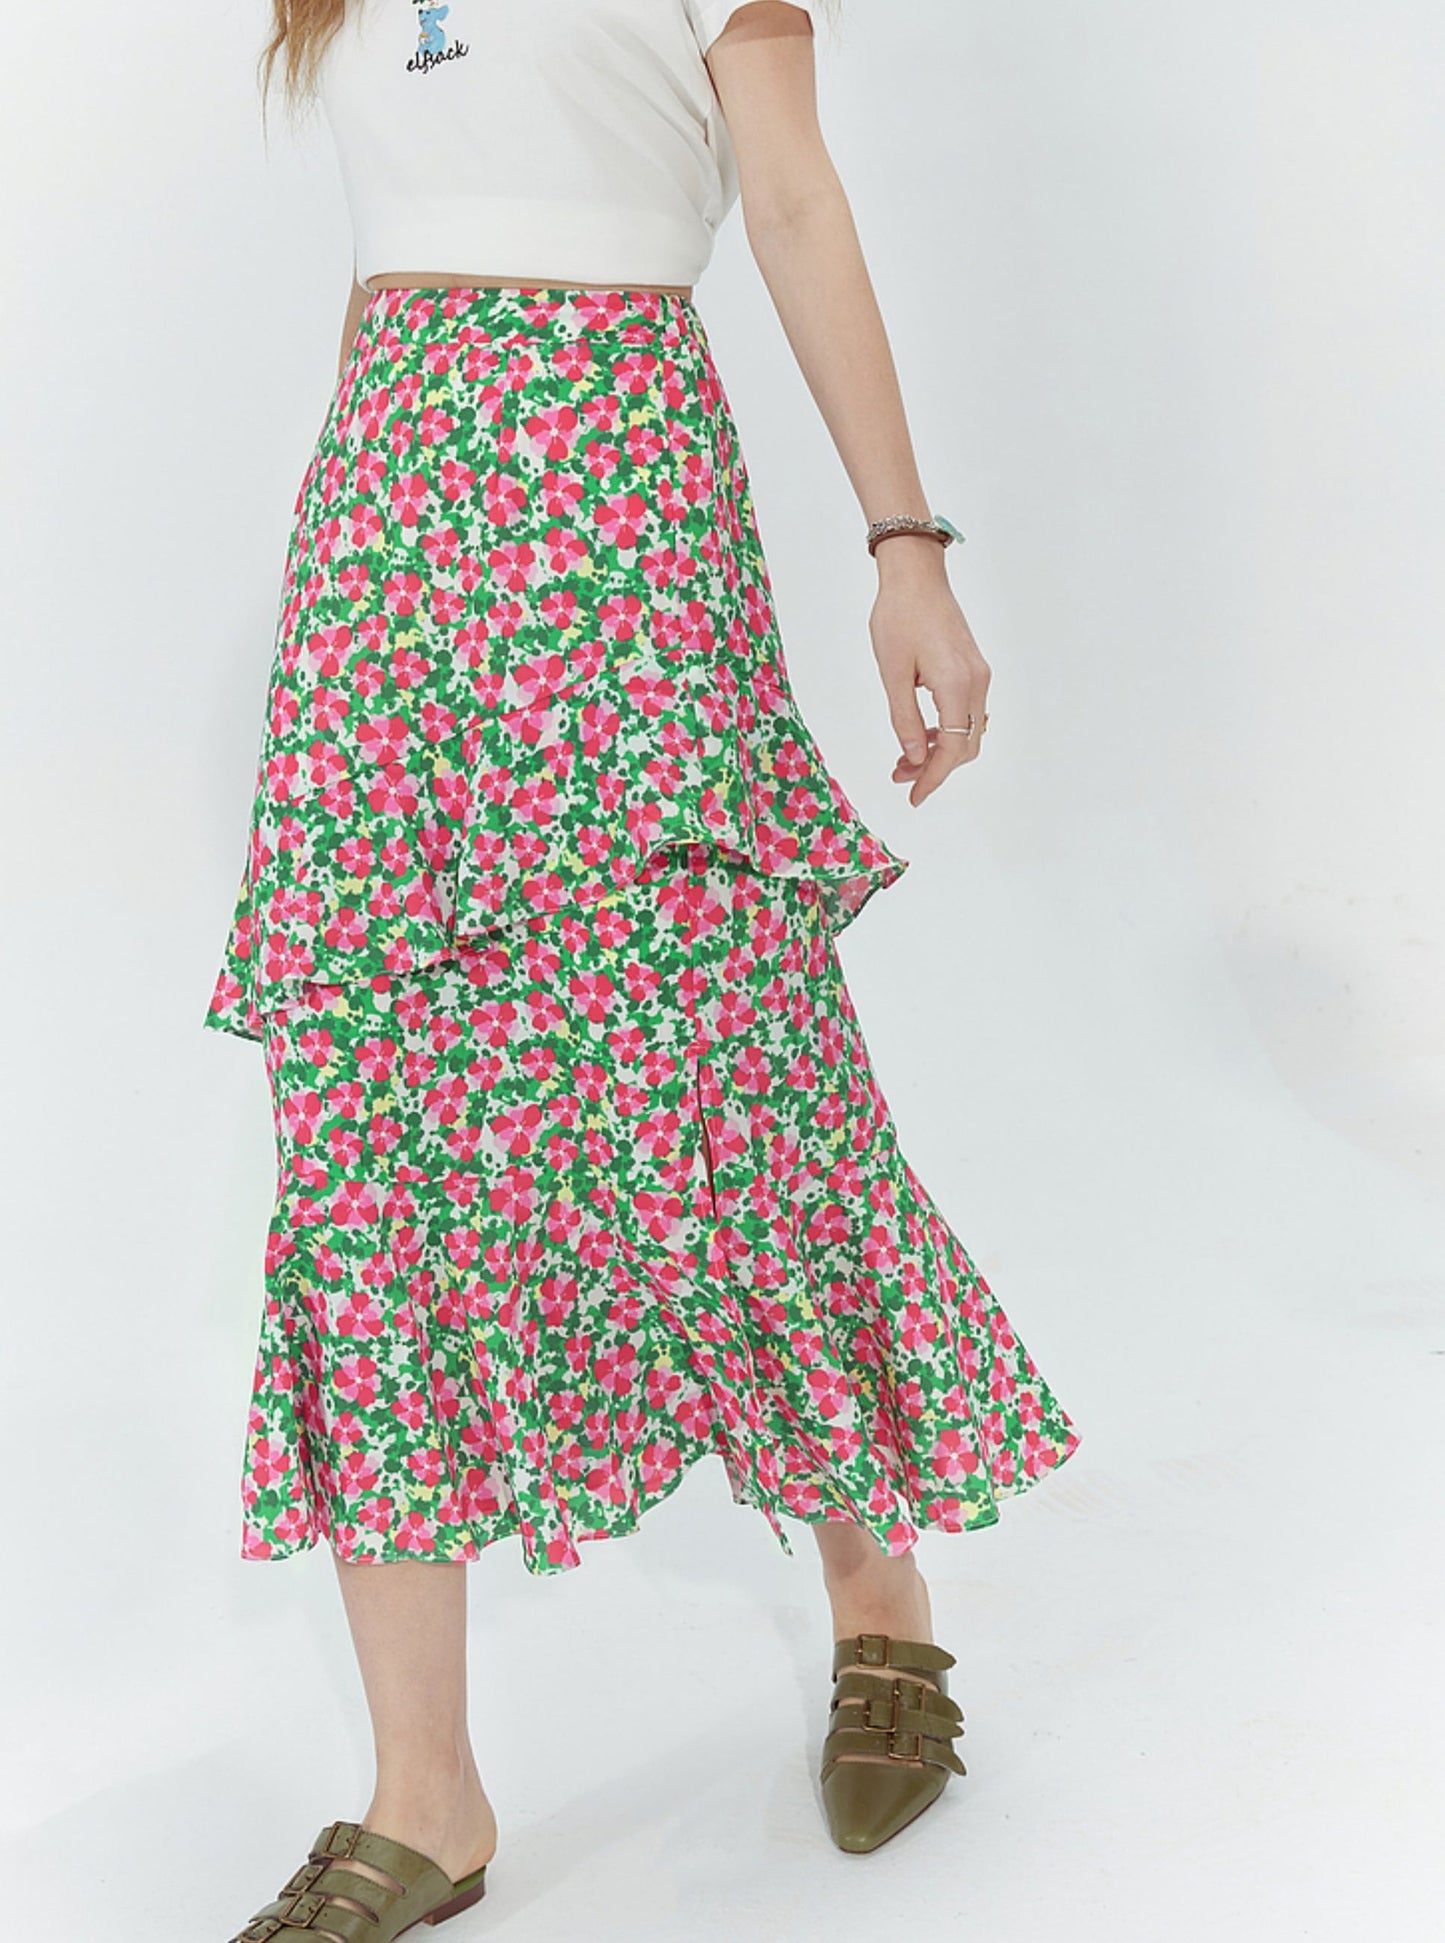 Floral Ruffle Hip Skirt